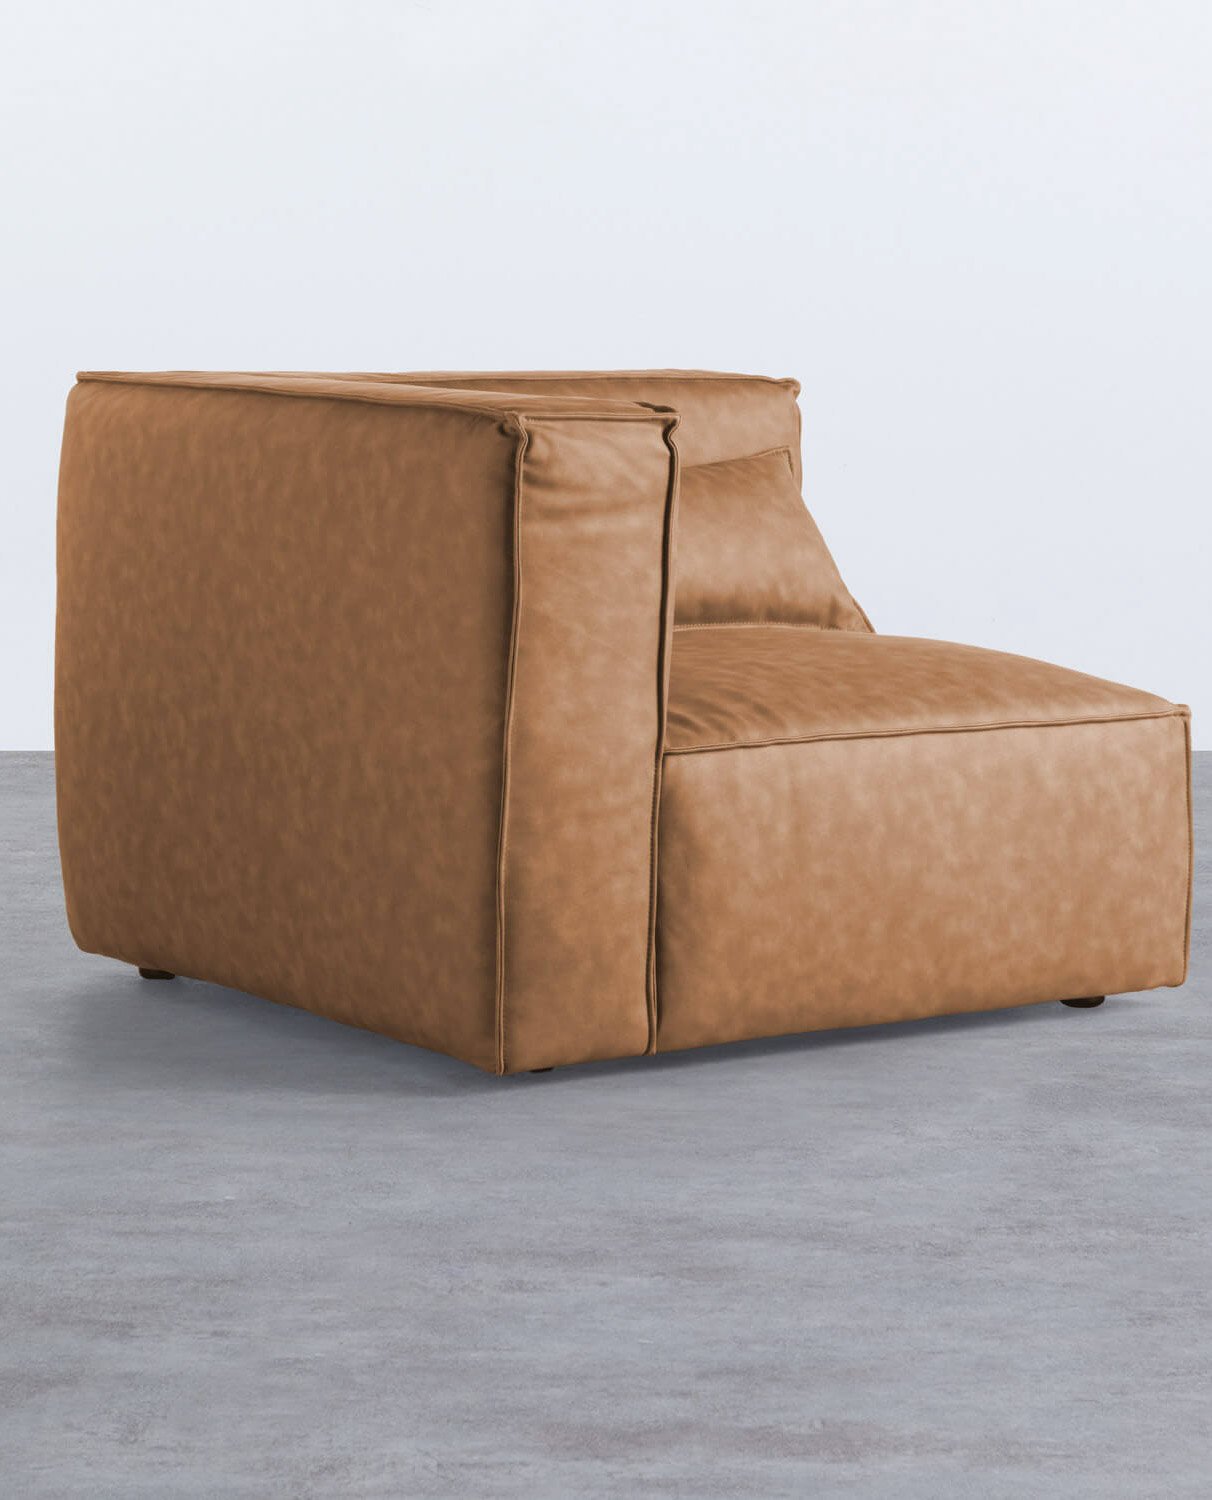 Modulares Sofa 4-Teilig mit 2 Ecksofas Kilhe, Galeriebild 2